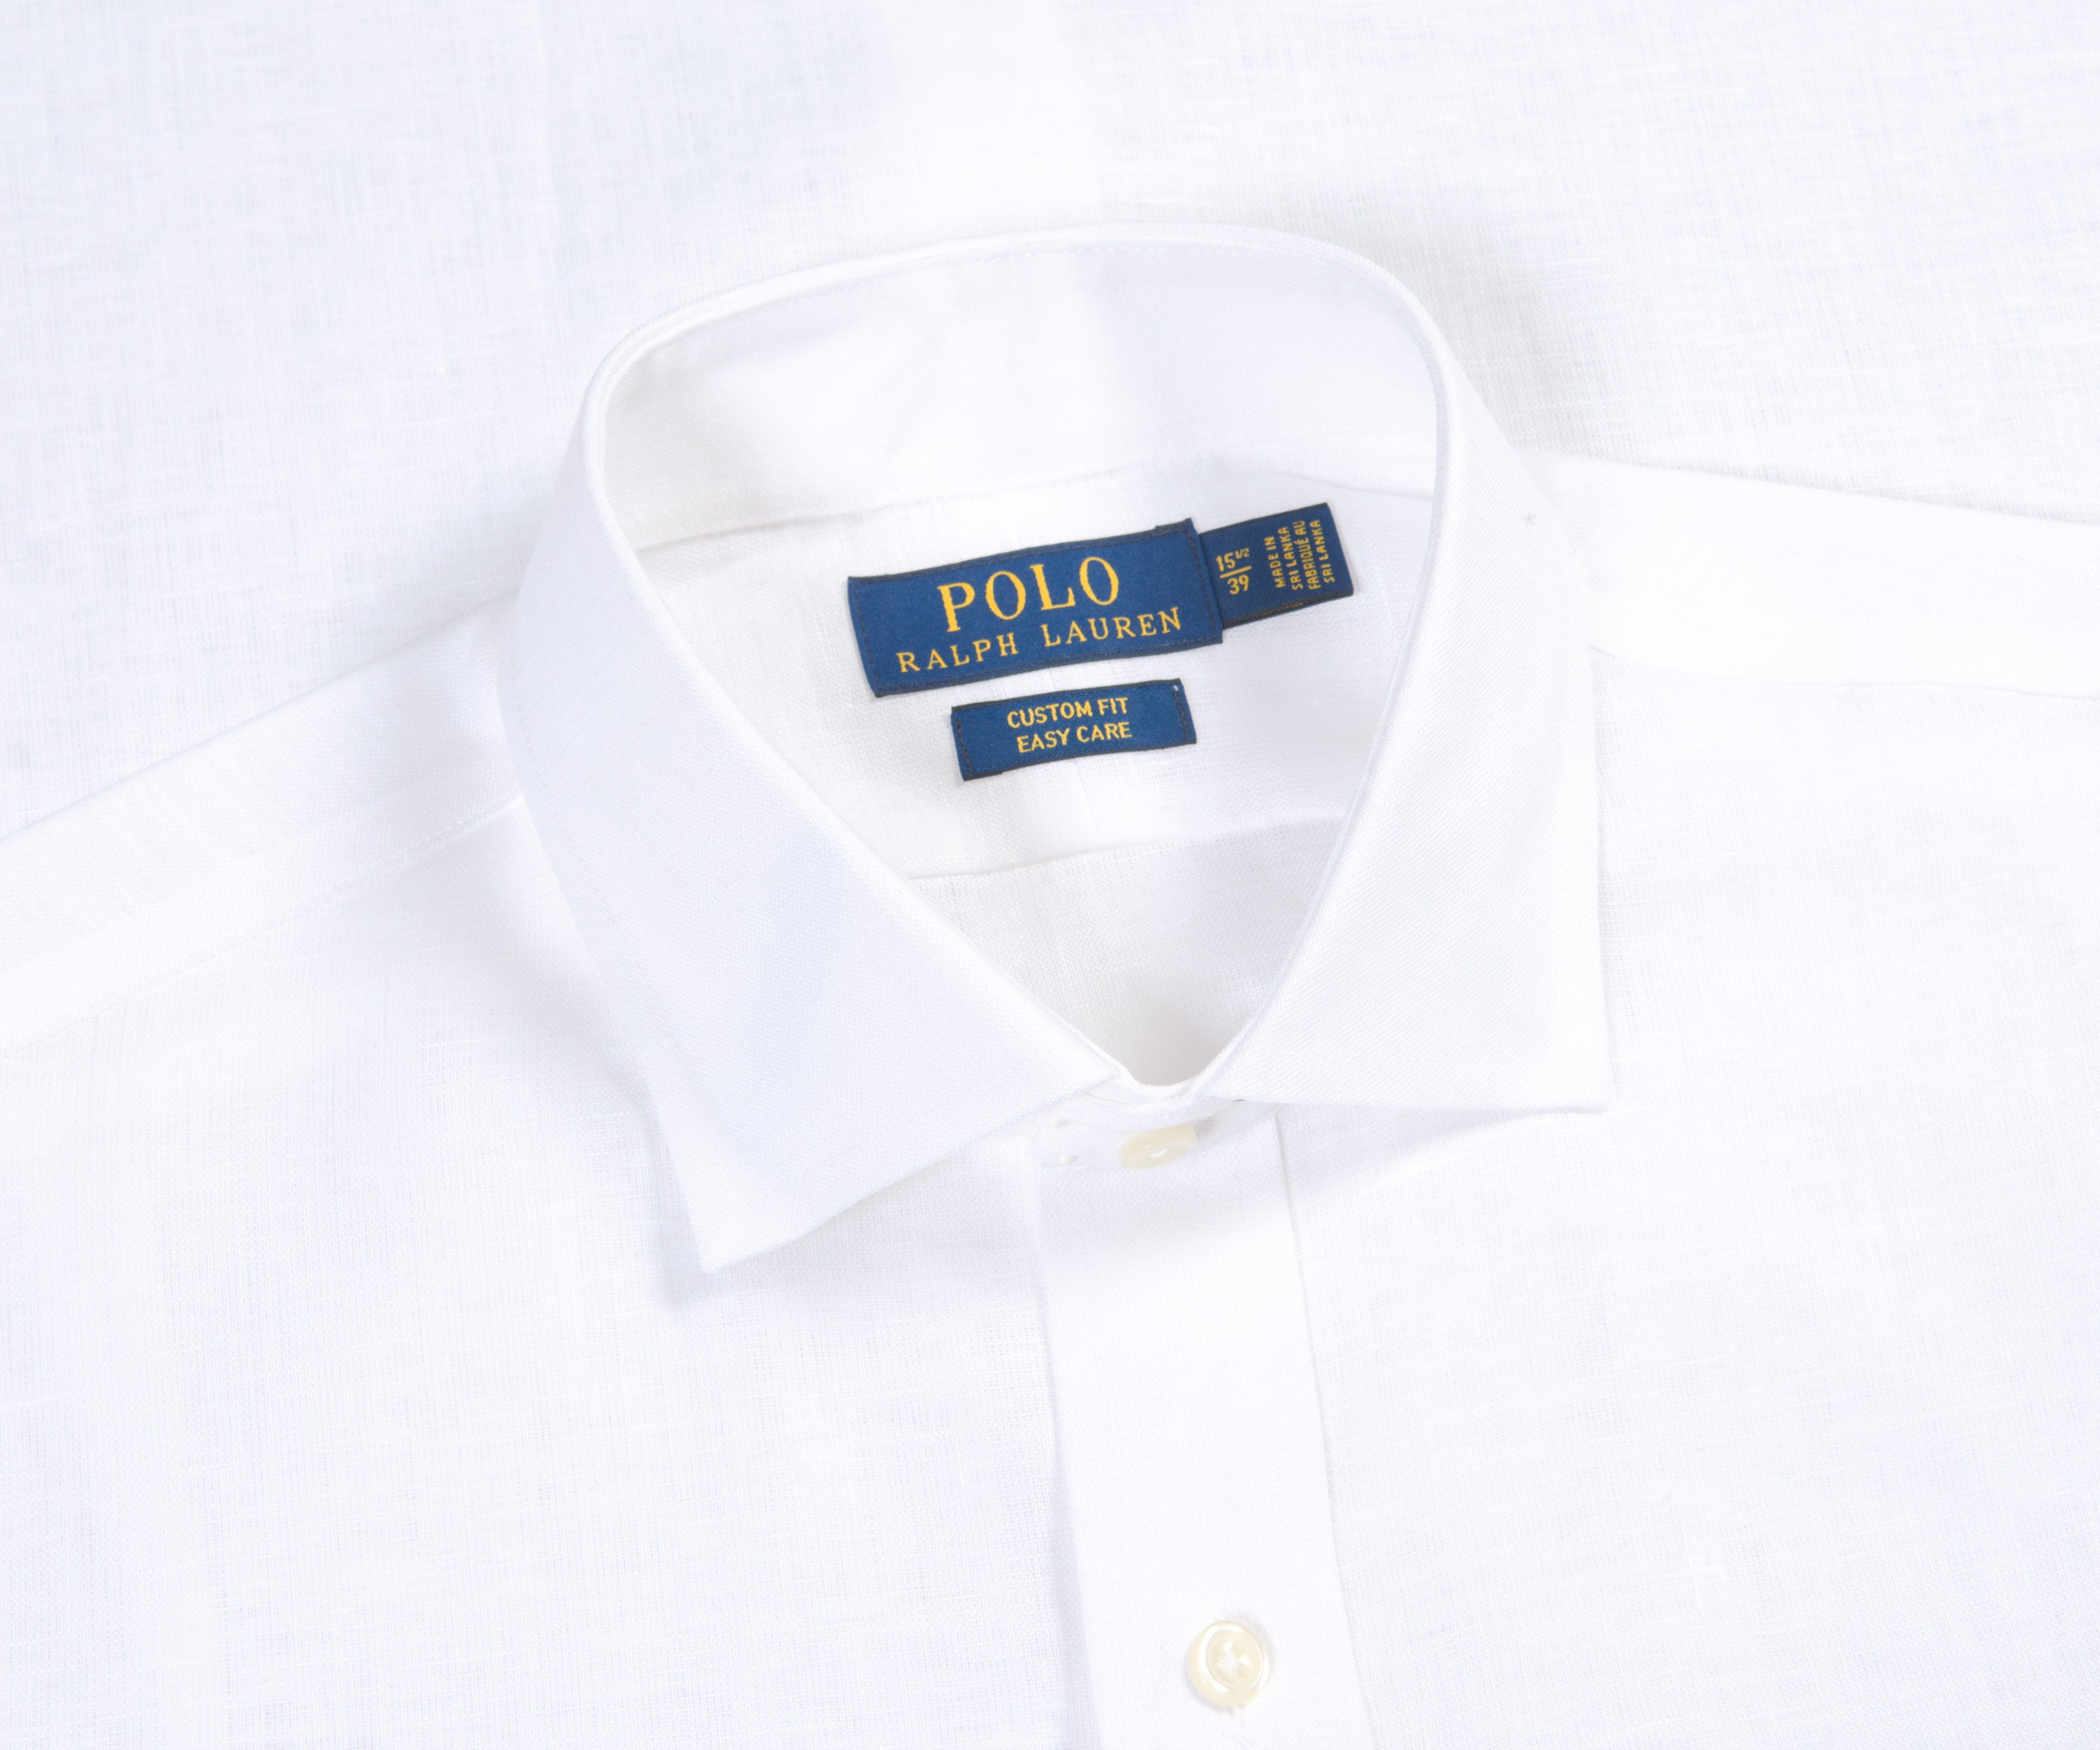 Polo Ralph Lauren Ralph Lauren Custom Fit Easy Care Linen Shirt White